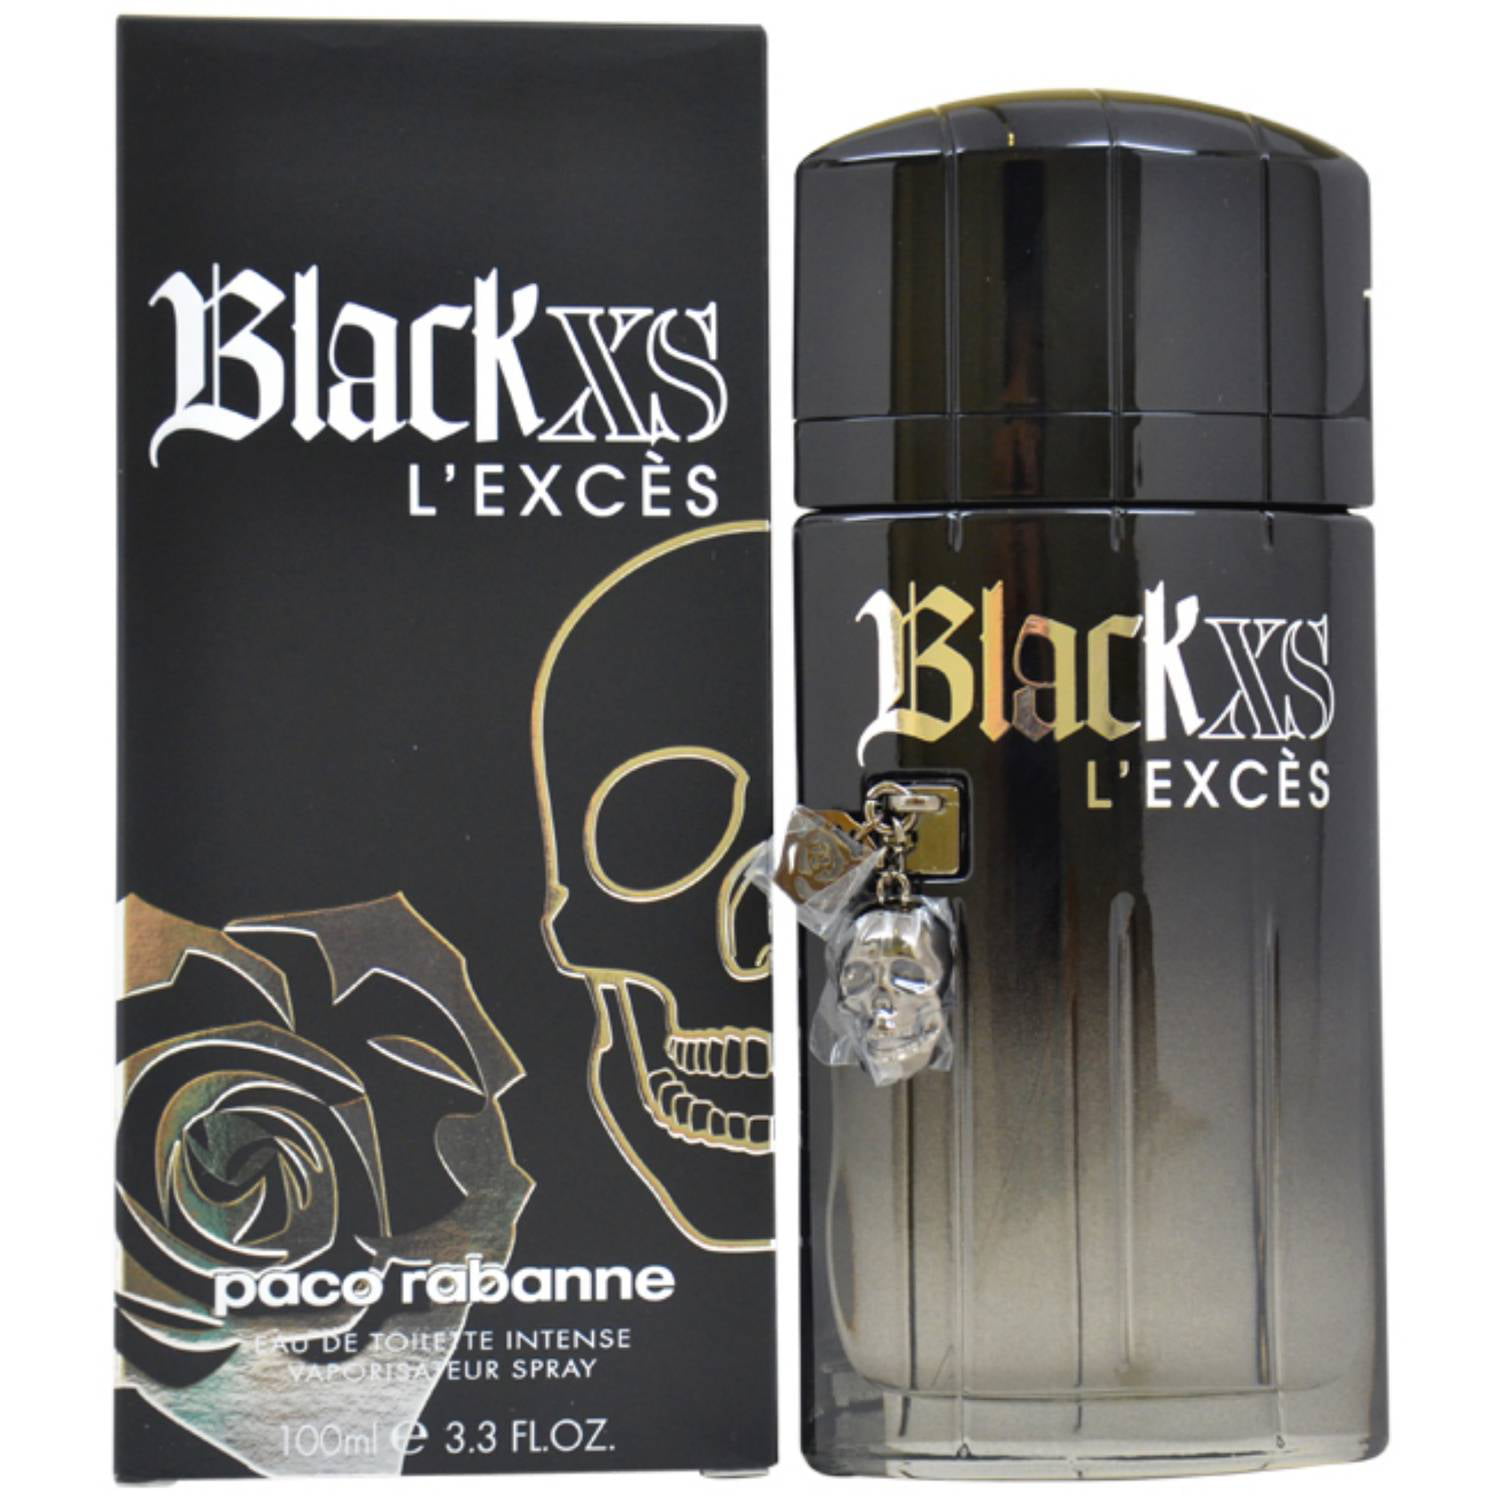 Paco Rabanne Men's Black XS L'Exces Cologne, 3.3 oz - Walmart.com